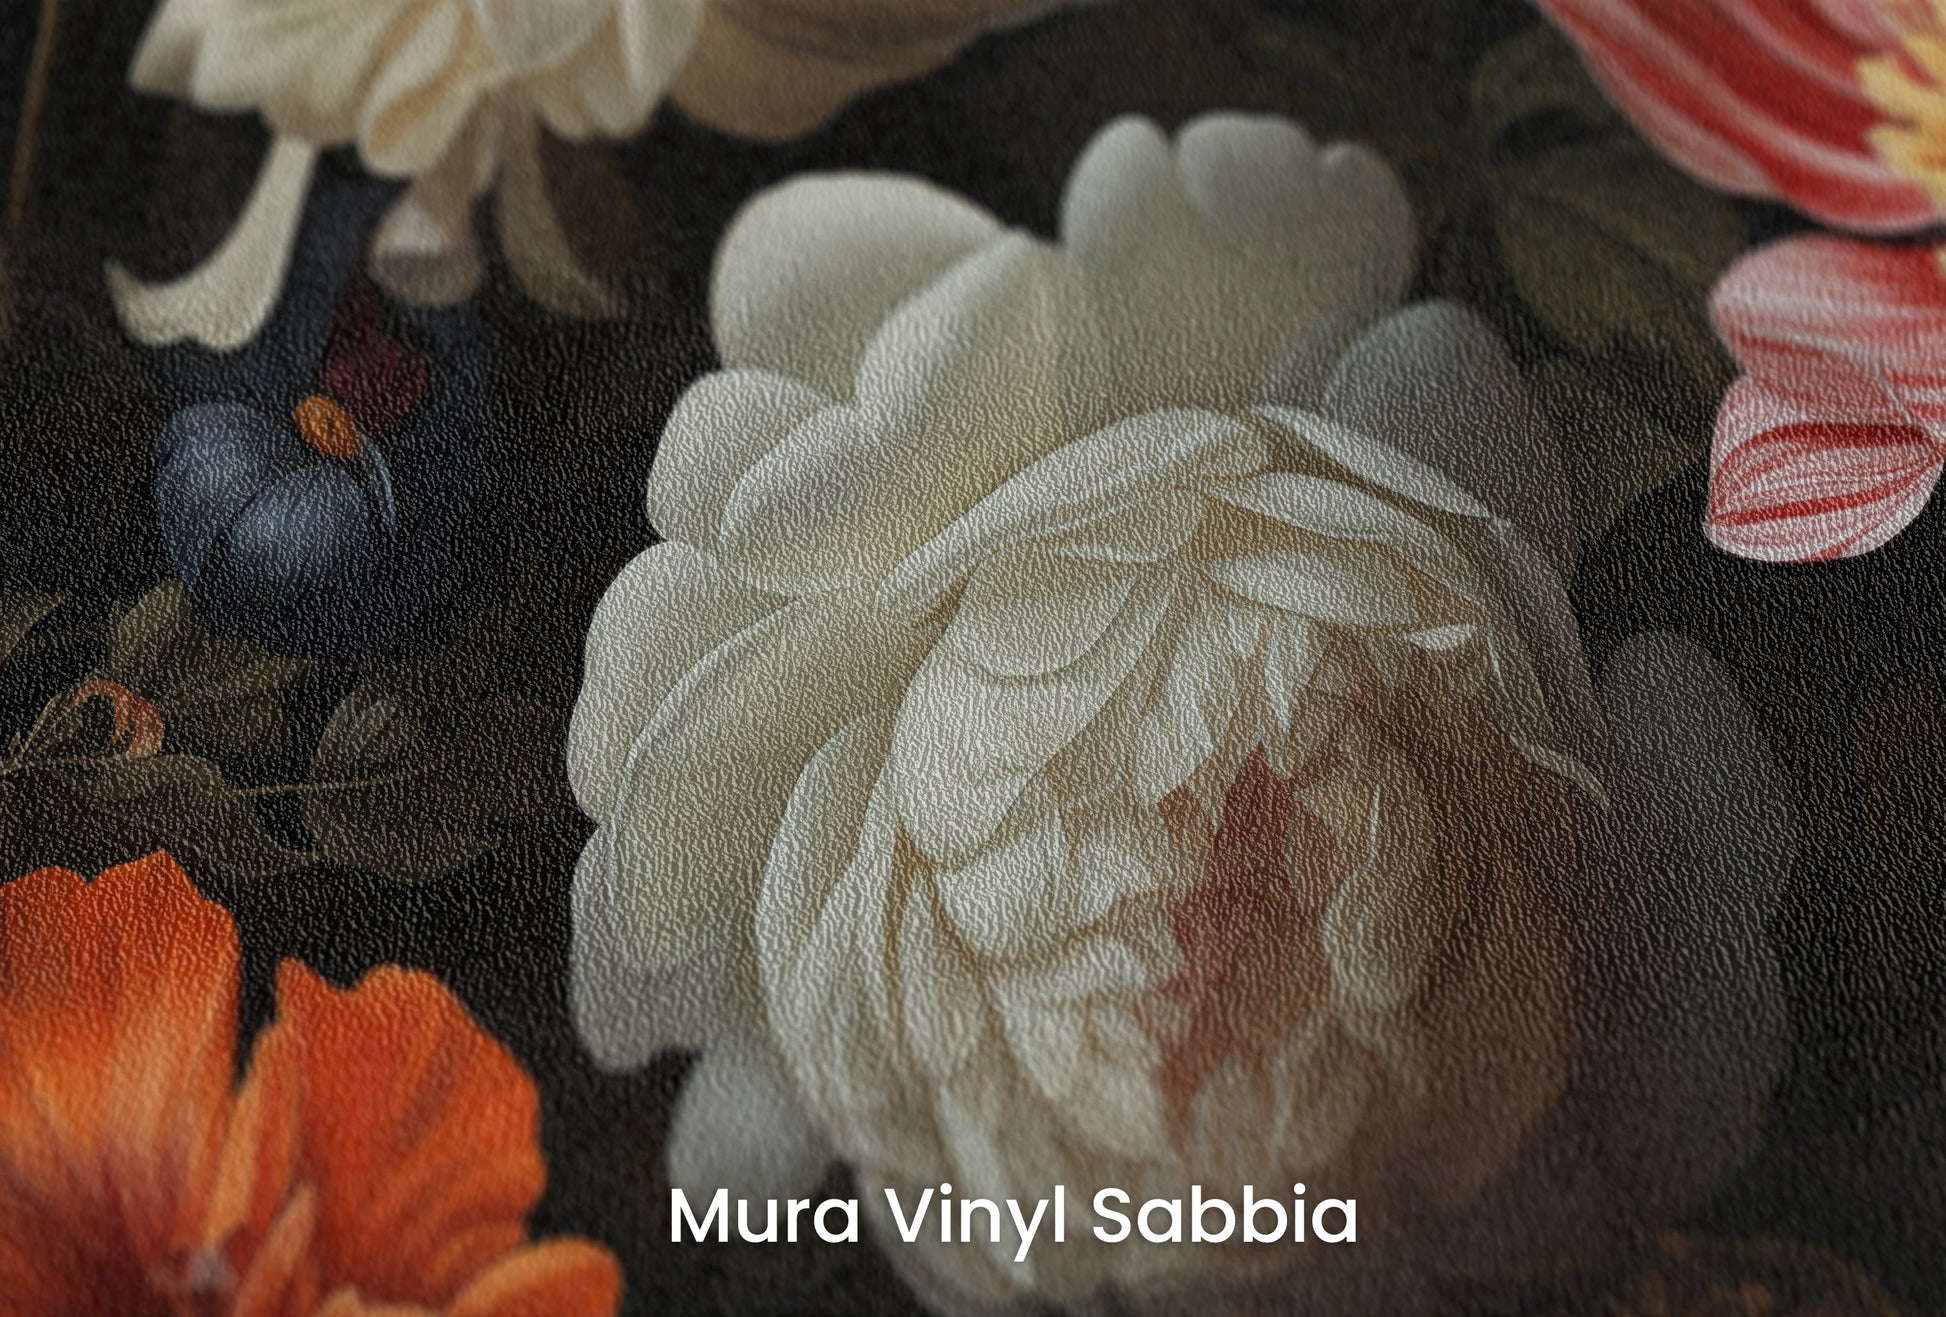 Zbliżenie na artystyczną fototapetę o nazwie Dutch Floral Masterpiece na podłożu Mura Vinyl Sabbia struktura grubego ziarna piasku.